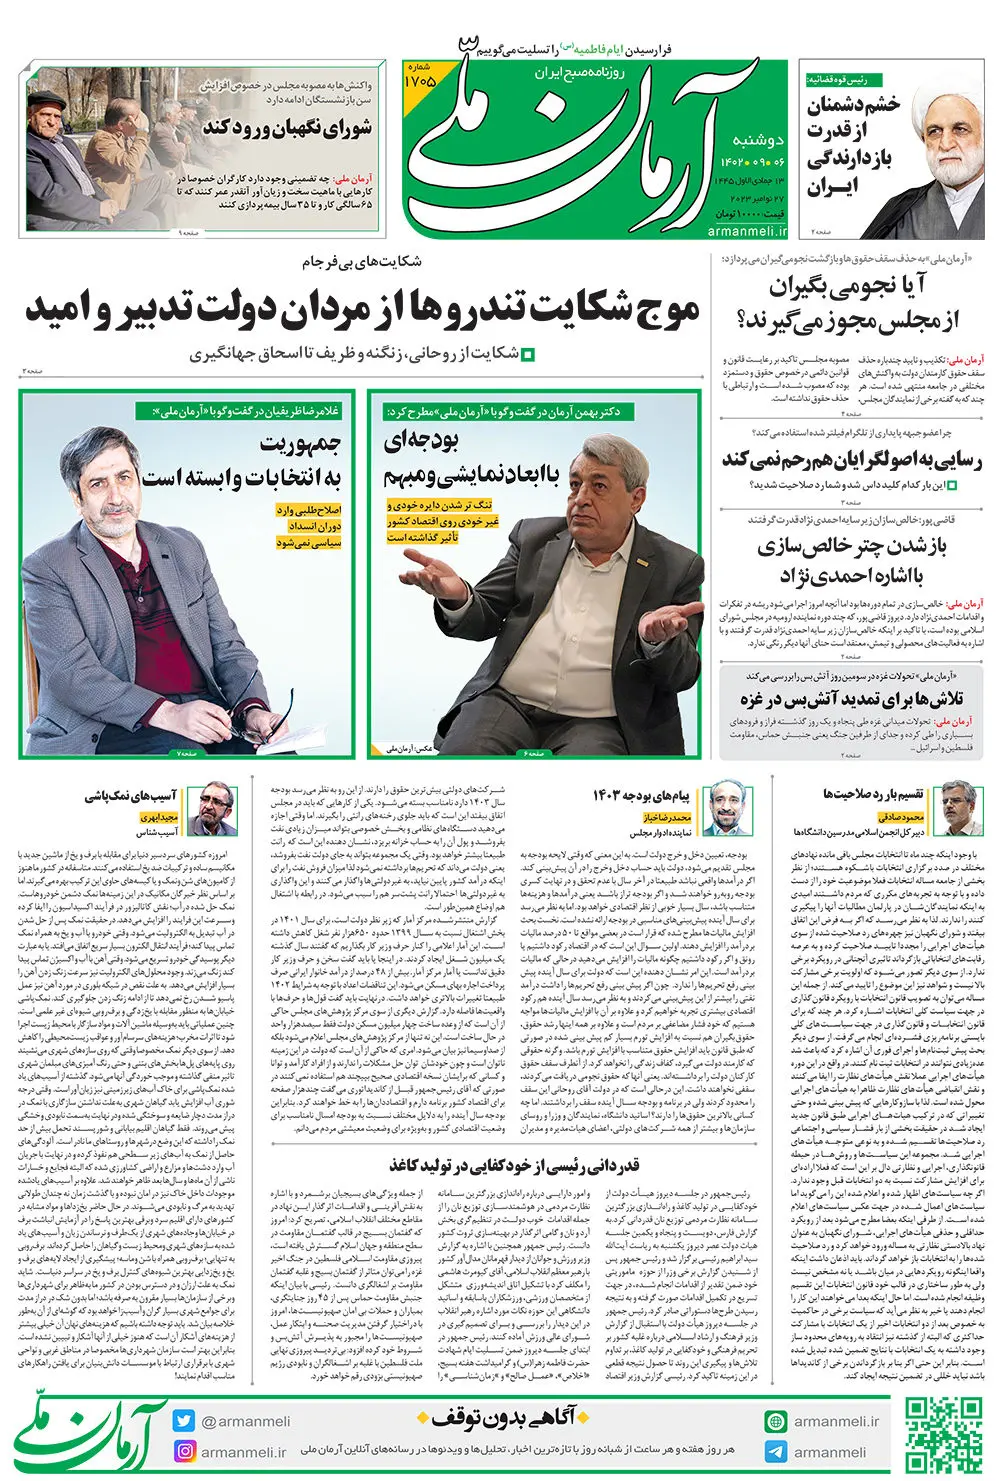  روزنامه آرمان ملی - دوشنبه 6  آذر - شماره 1705 